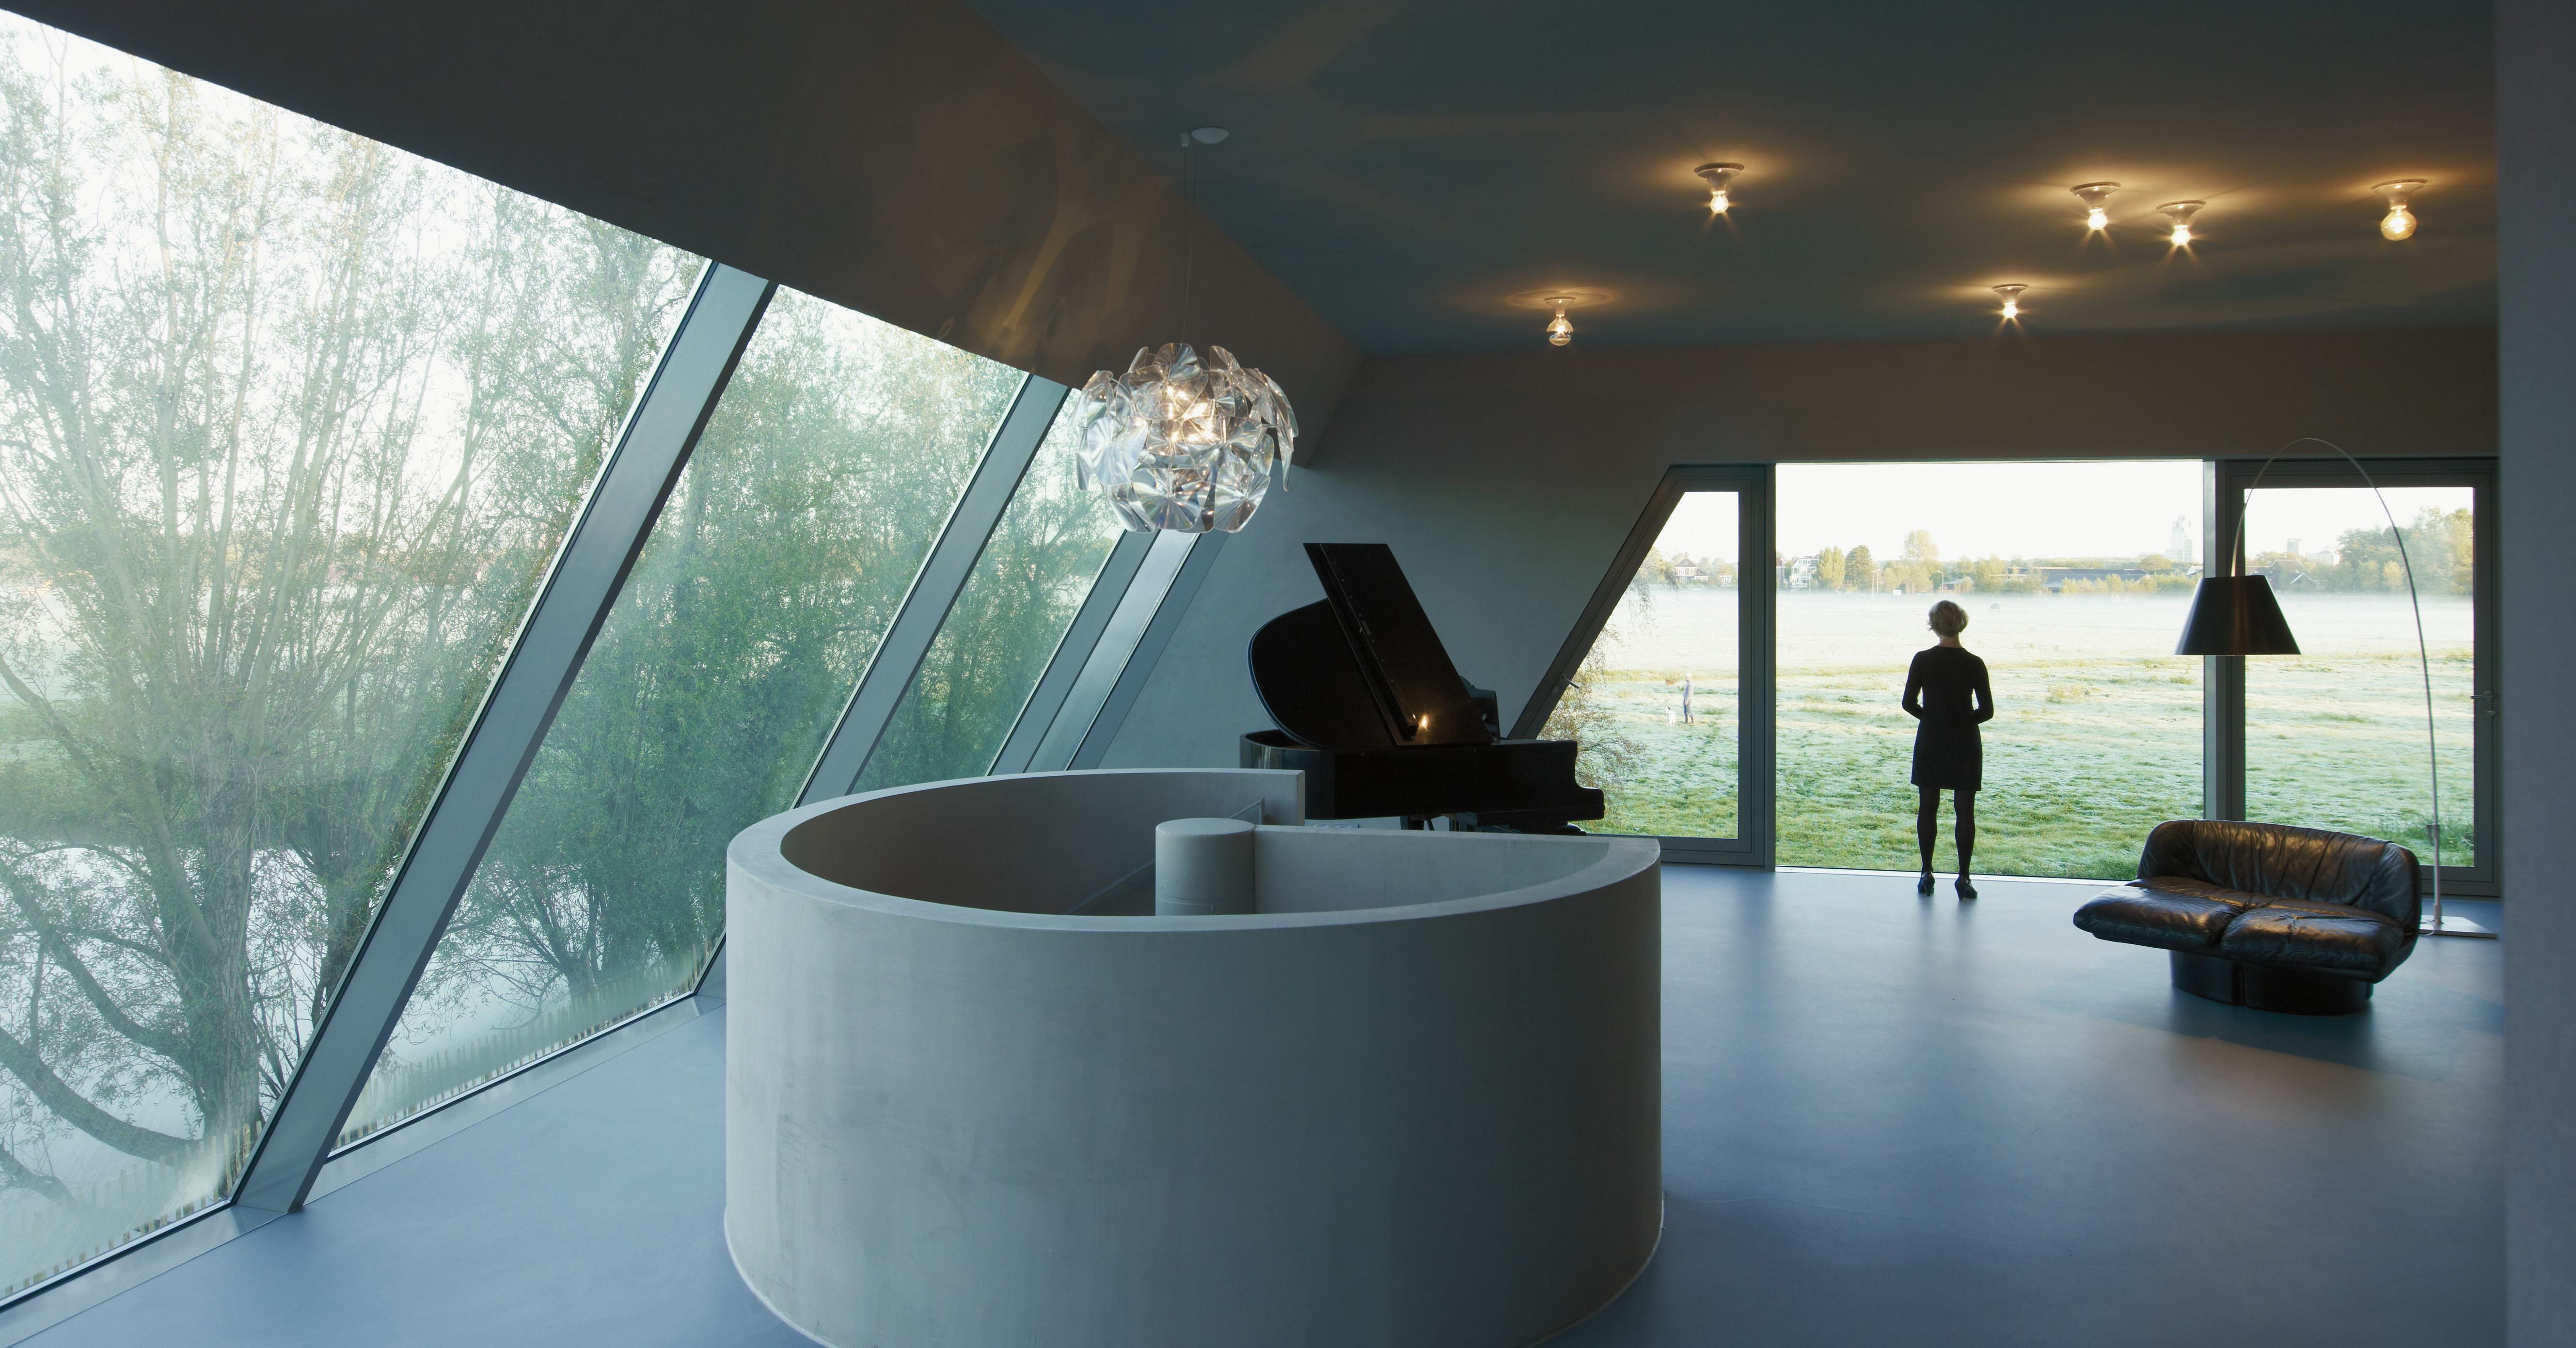 SODA-House in Amstelveen door VMX Architects. Beeld Jeroen Musch